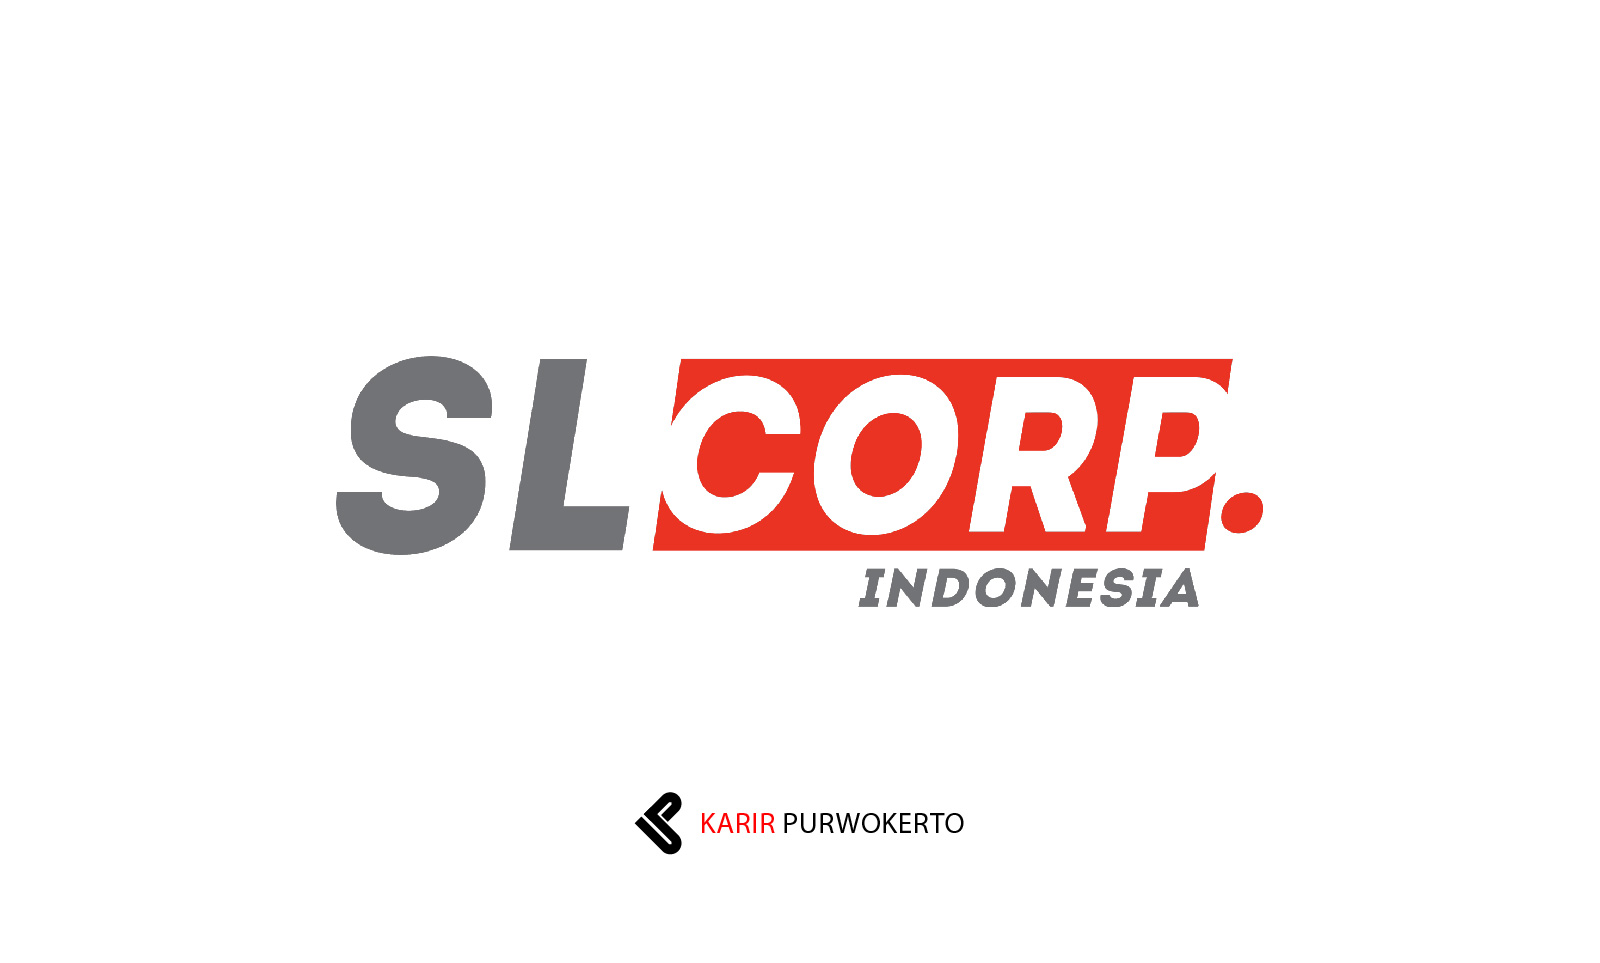 Lowongan Kerja SL Corp Indonesia